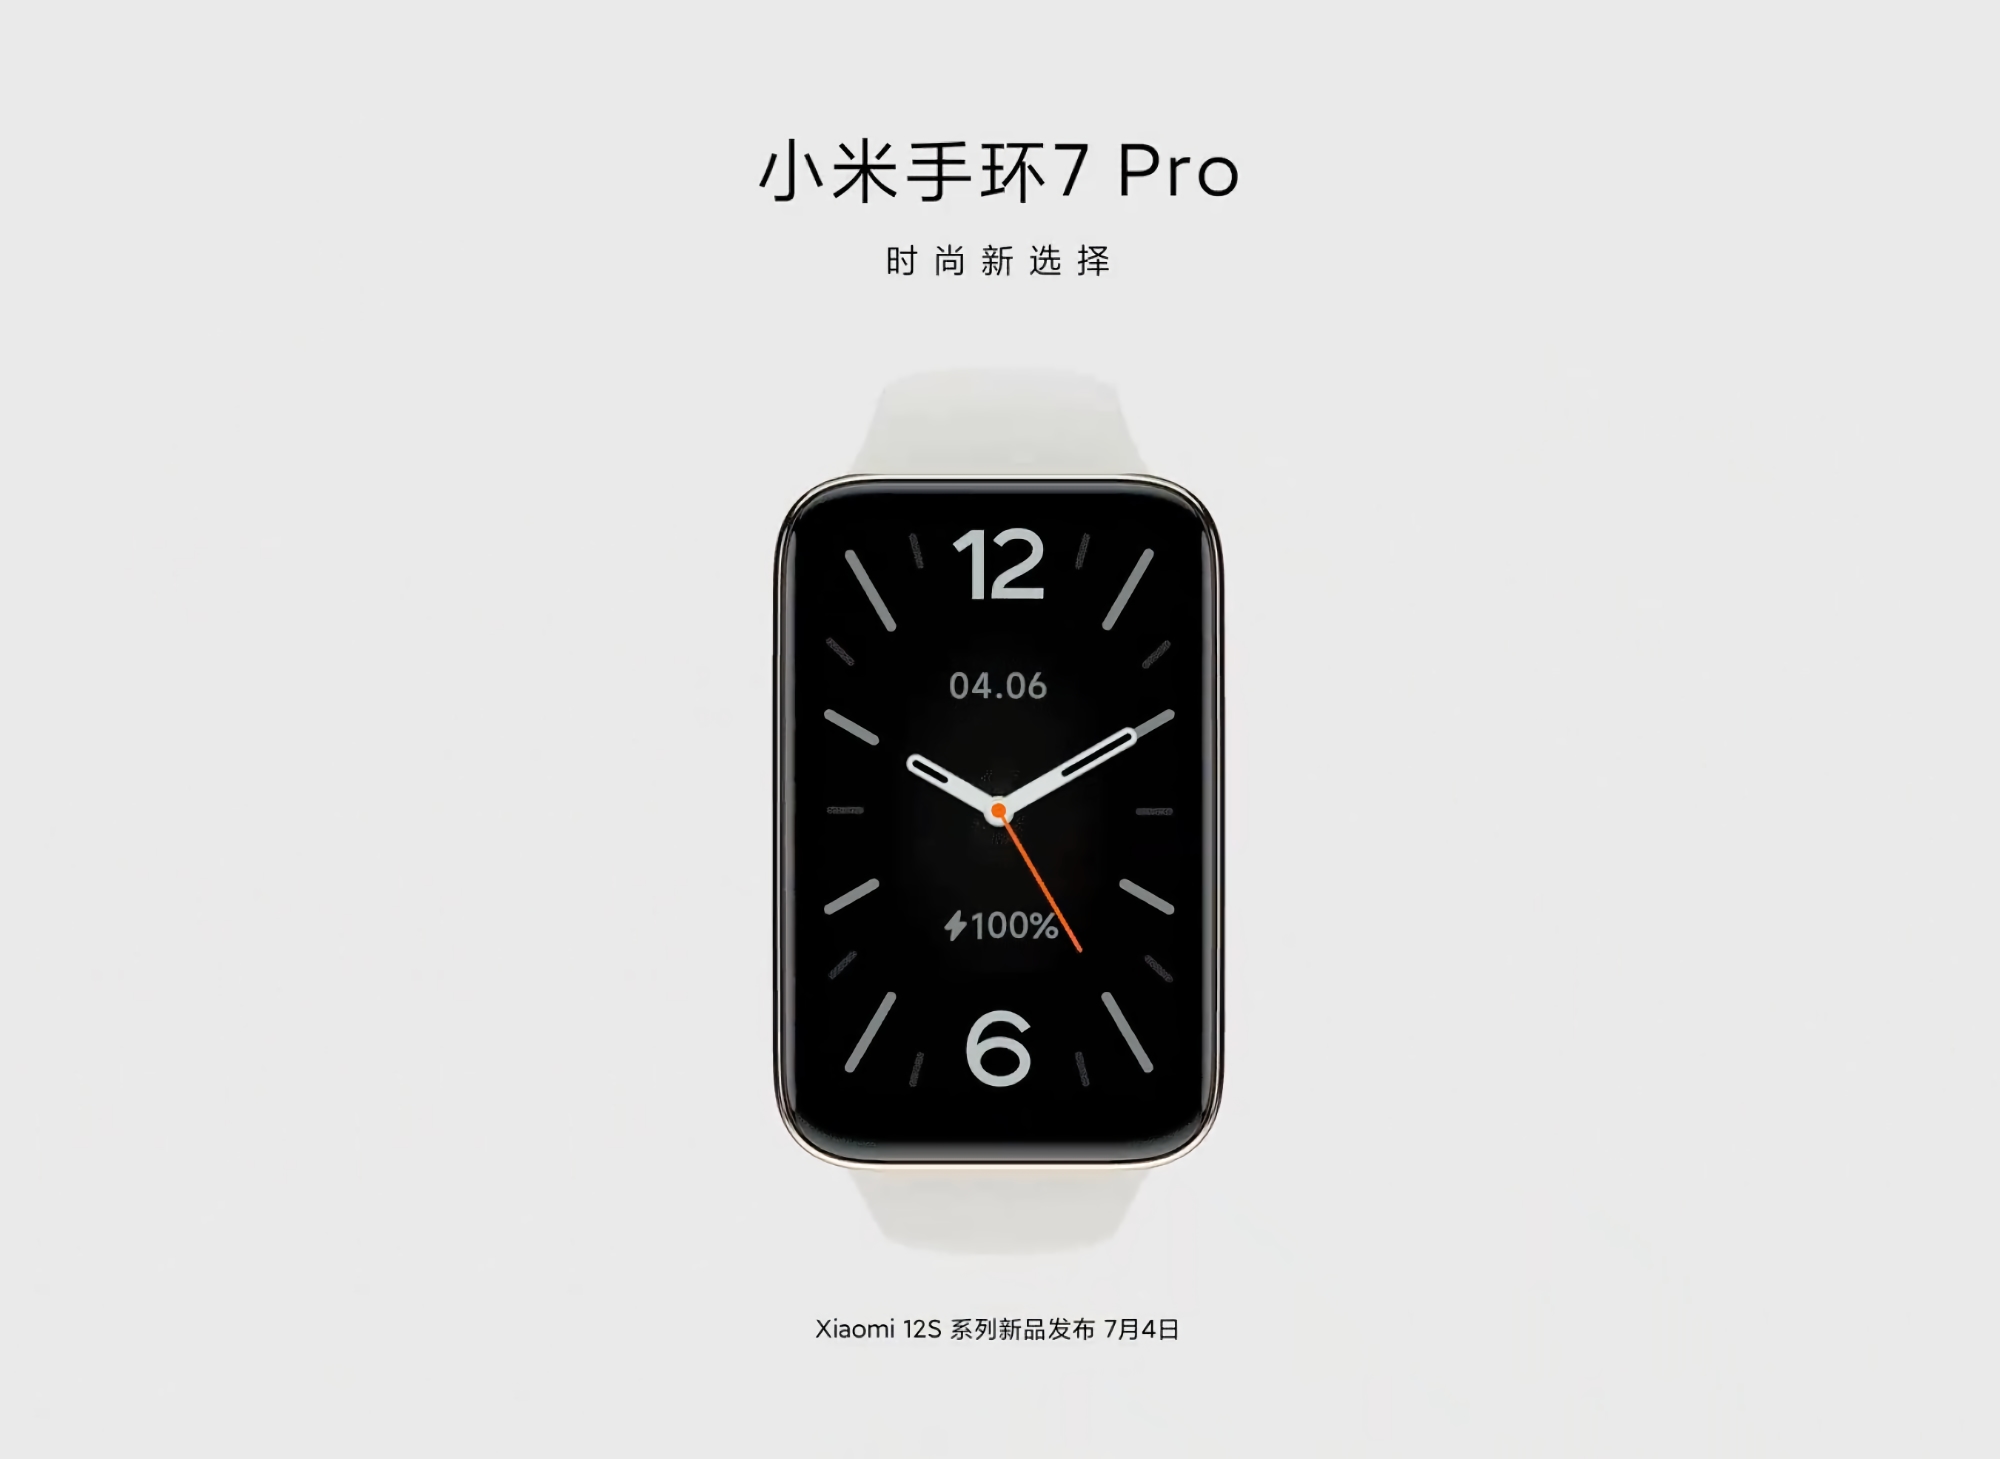 Ufficiale: Xiaomi Mi Band 7 Pro sarà presentata insieme alla linea di smartphone Xiaomi 12S il 4 luglio